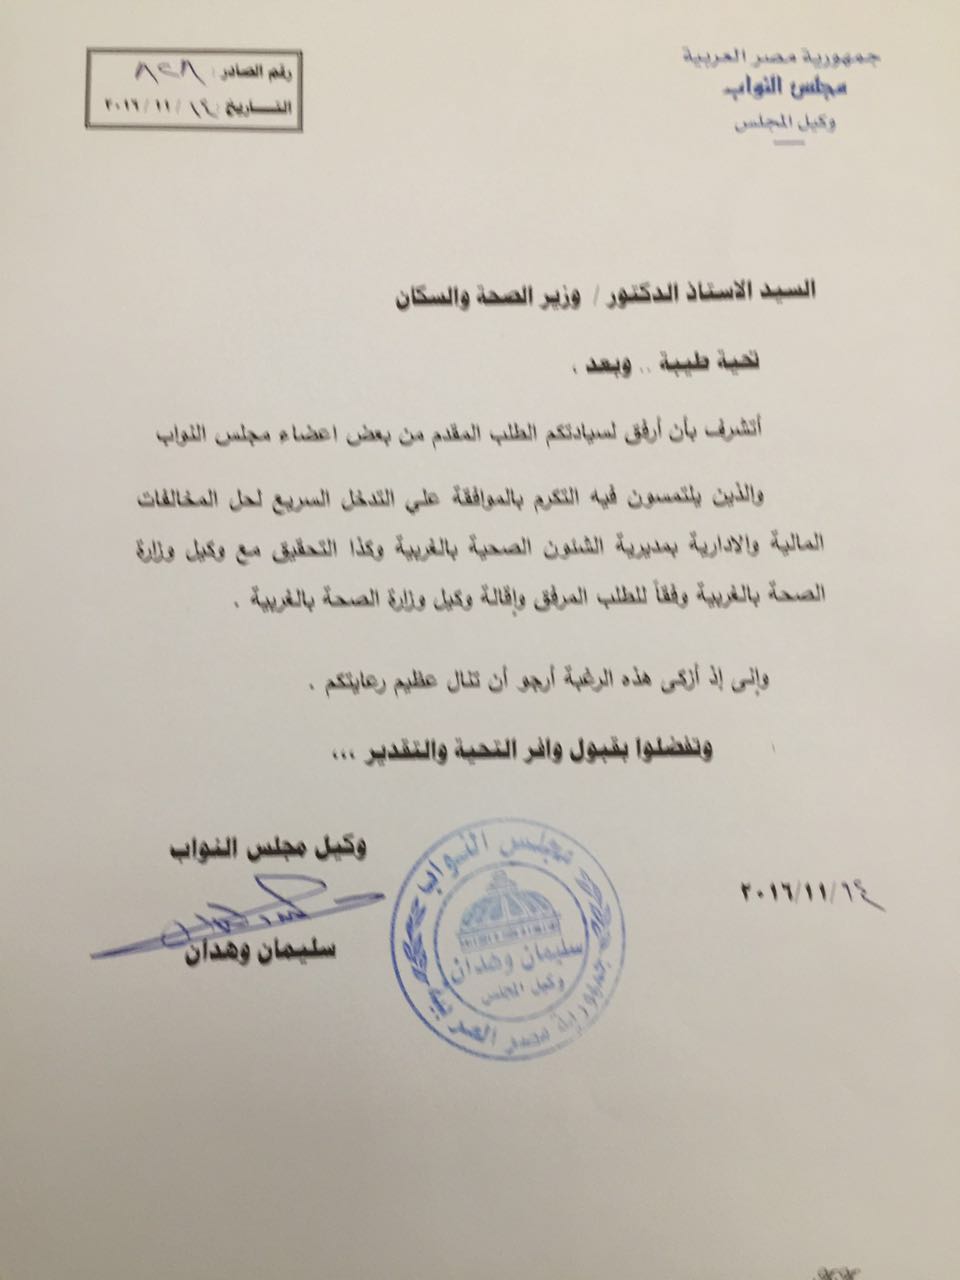 مذكرة وكيل مجلس النواب لإحالة الطلب إلى وزير الصحة